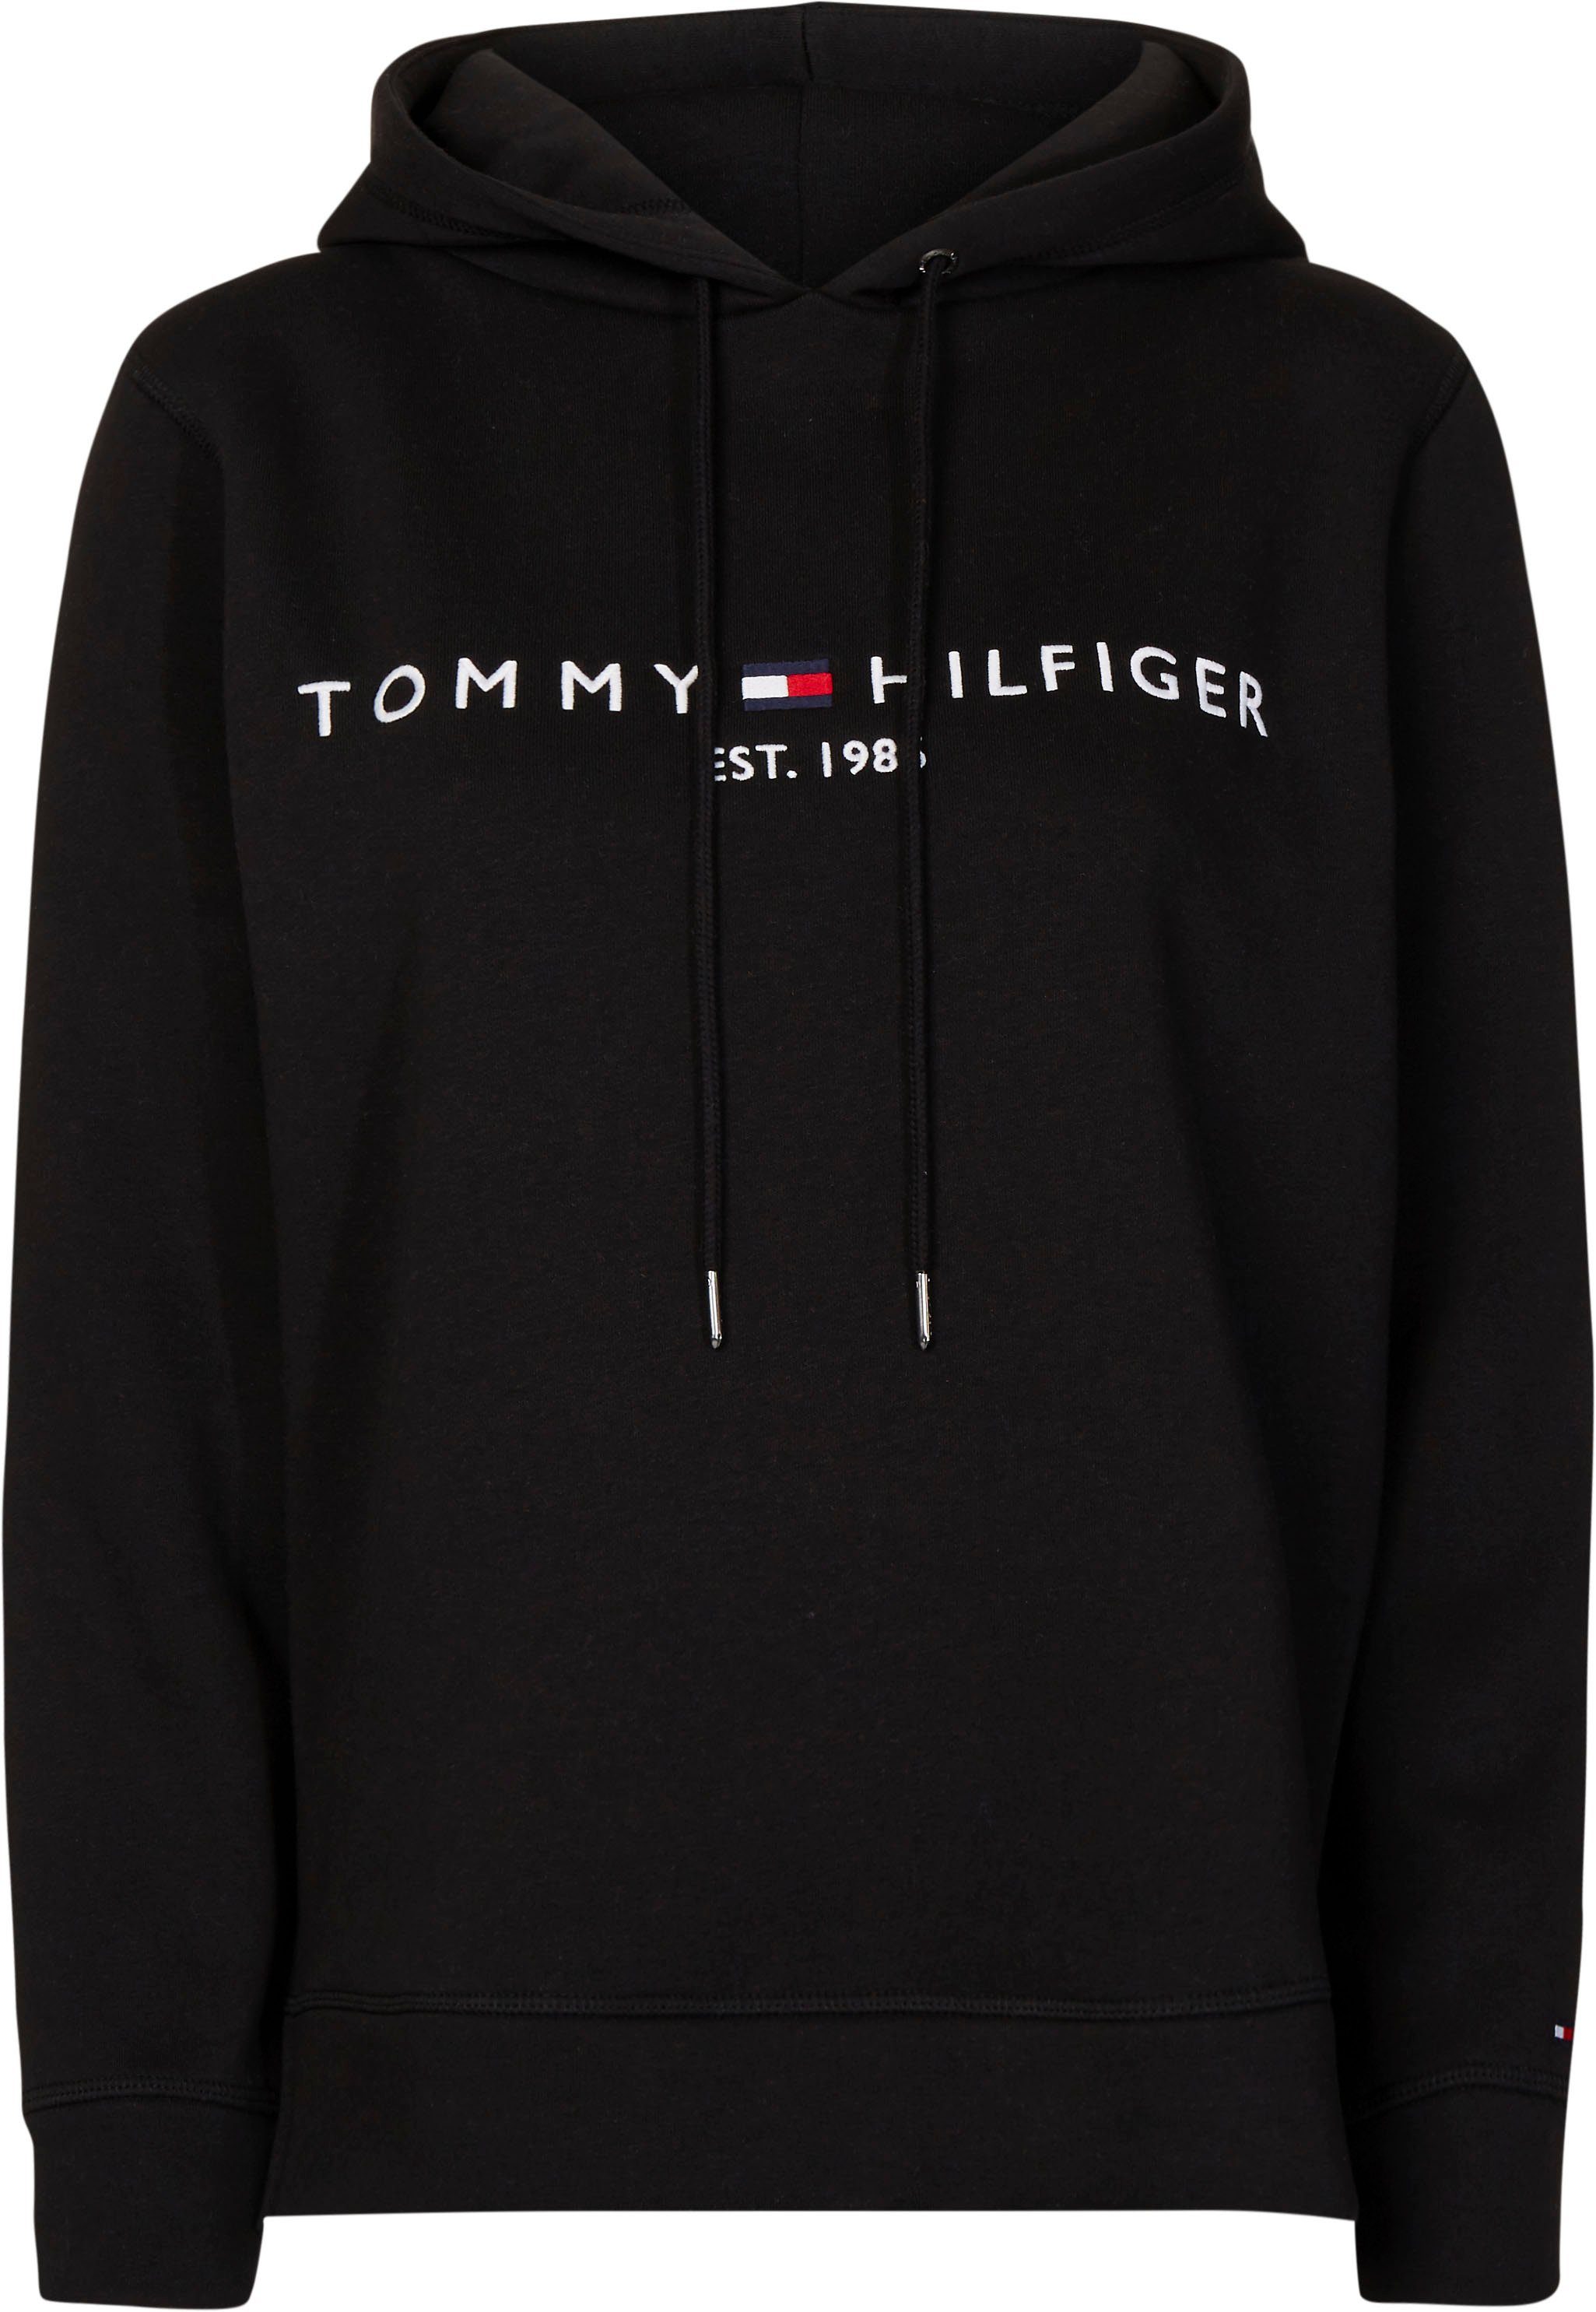 Tommy Hilfiger SALE & Outlet » günstig & reduziert | OTTO